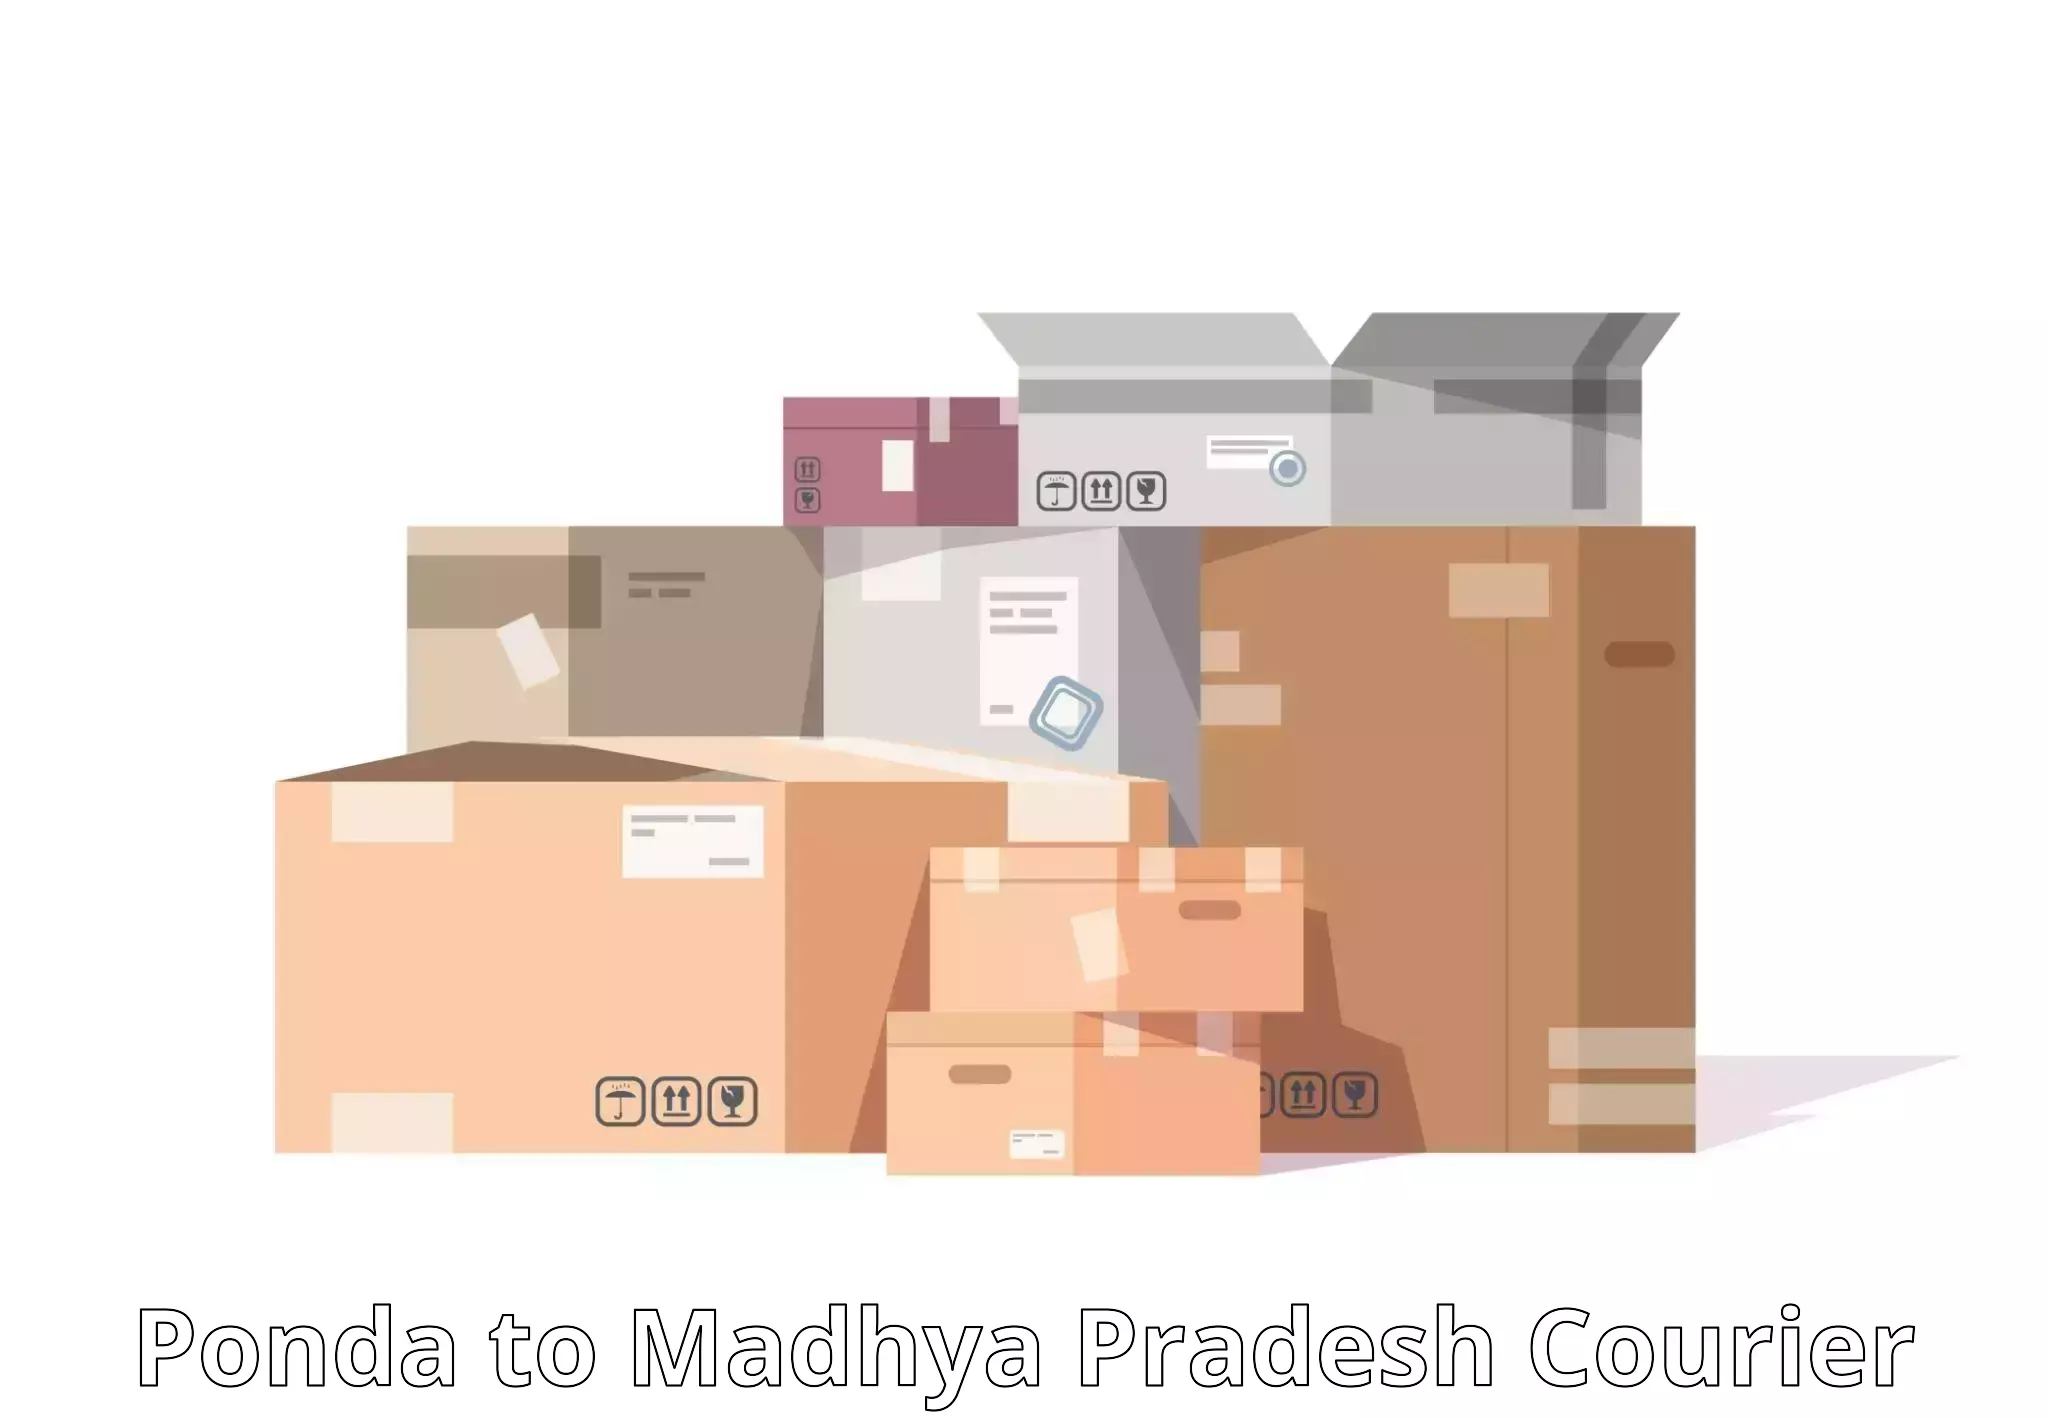 Efficient shipping operations in Ponda to Badnagar